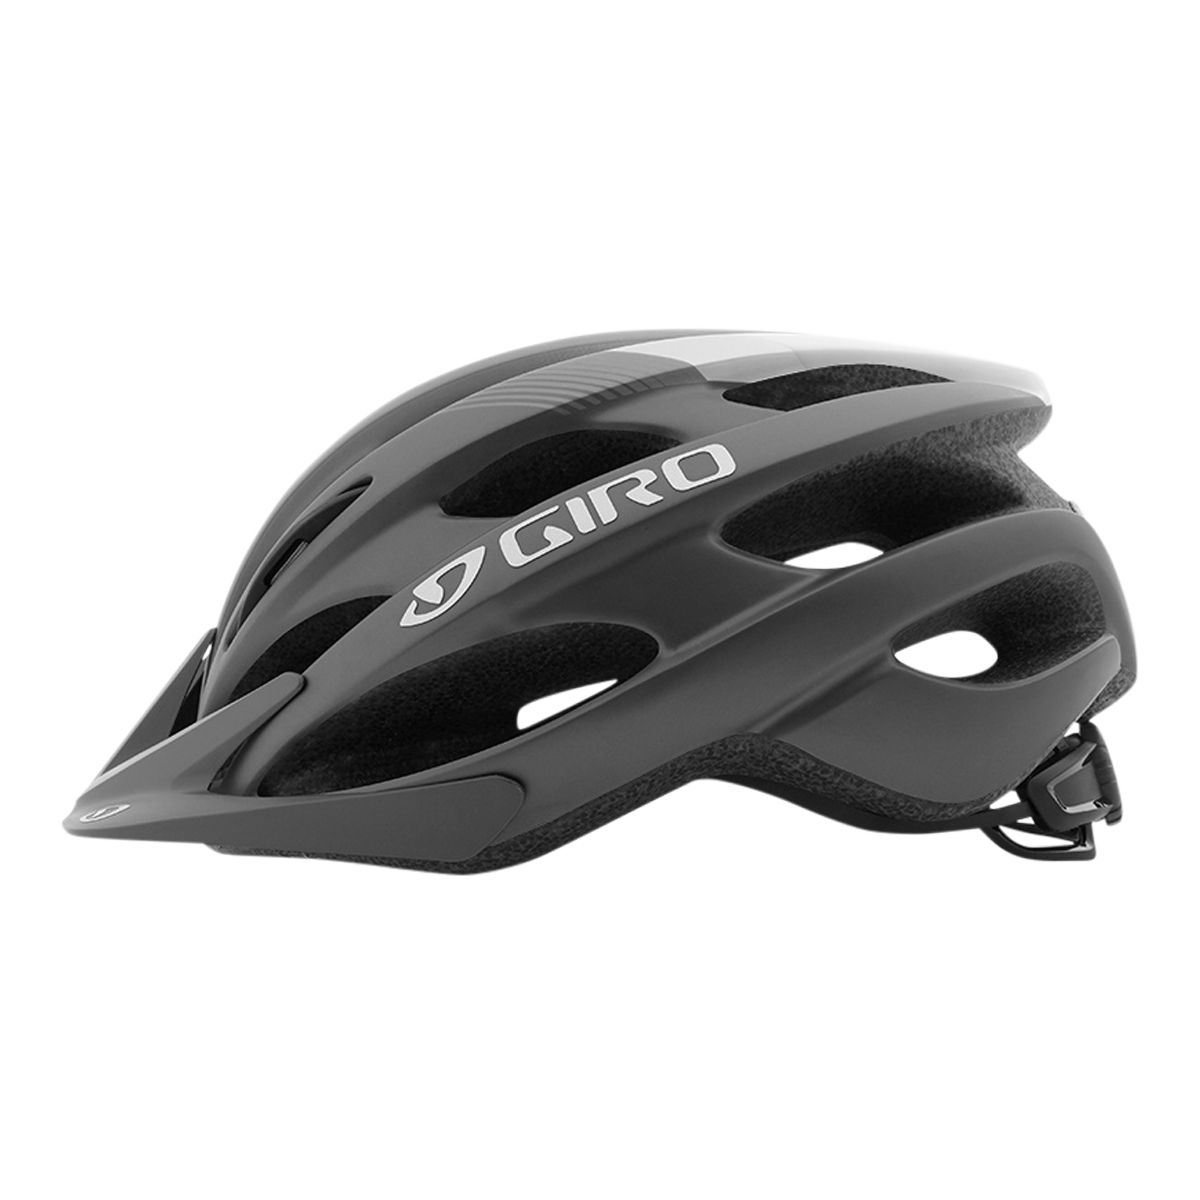 Giro Revel Bike Helmet - Matte Black/Charcoal